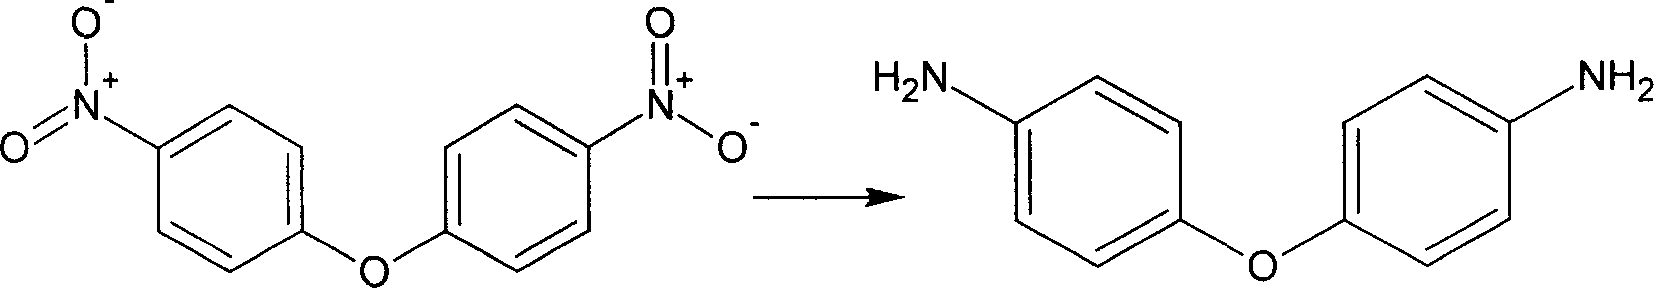 Method for preparing 4,4'-diaminodiphenyl ether